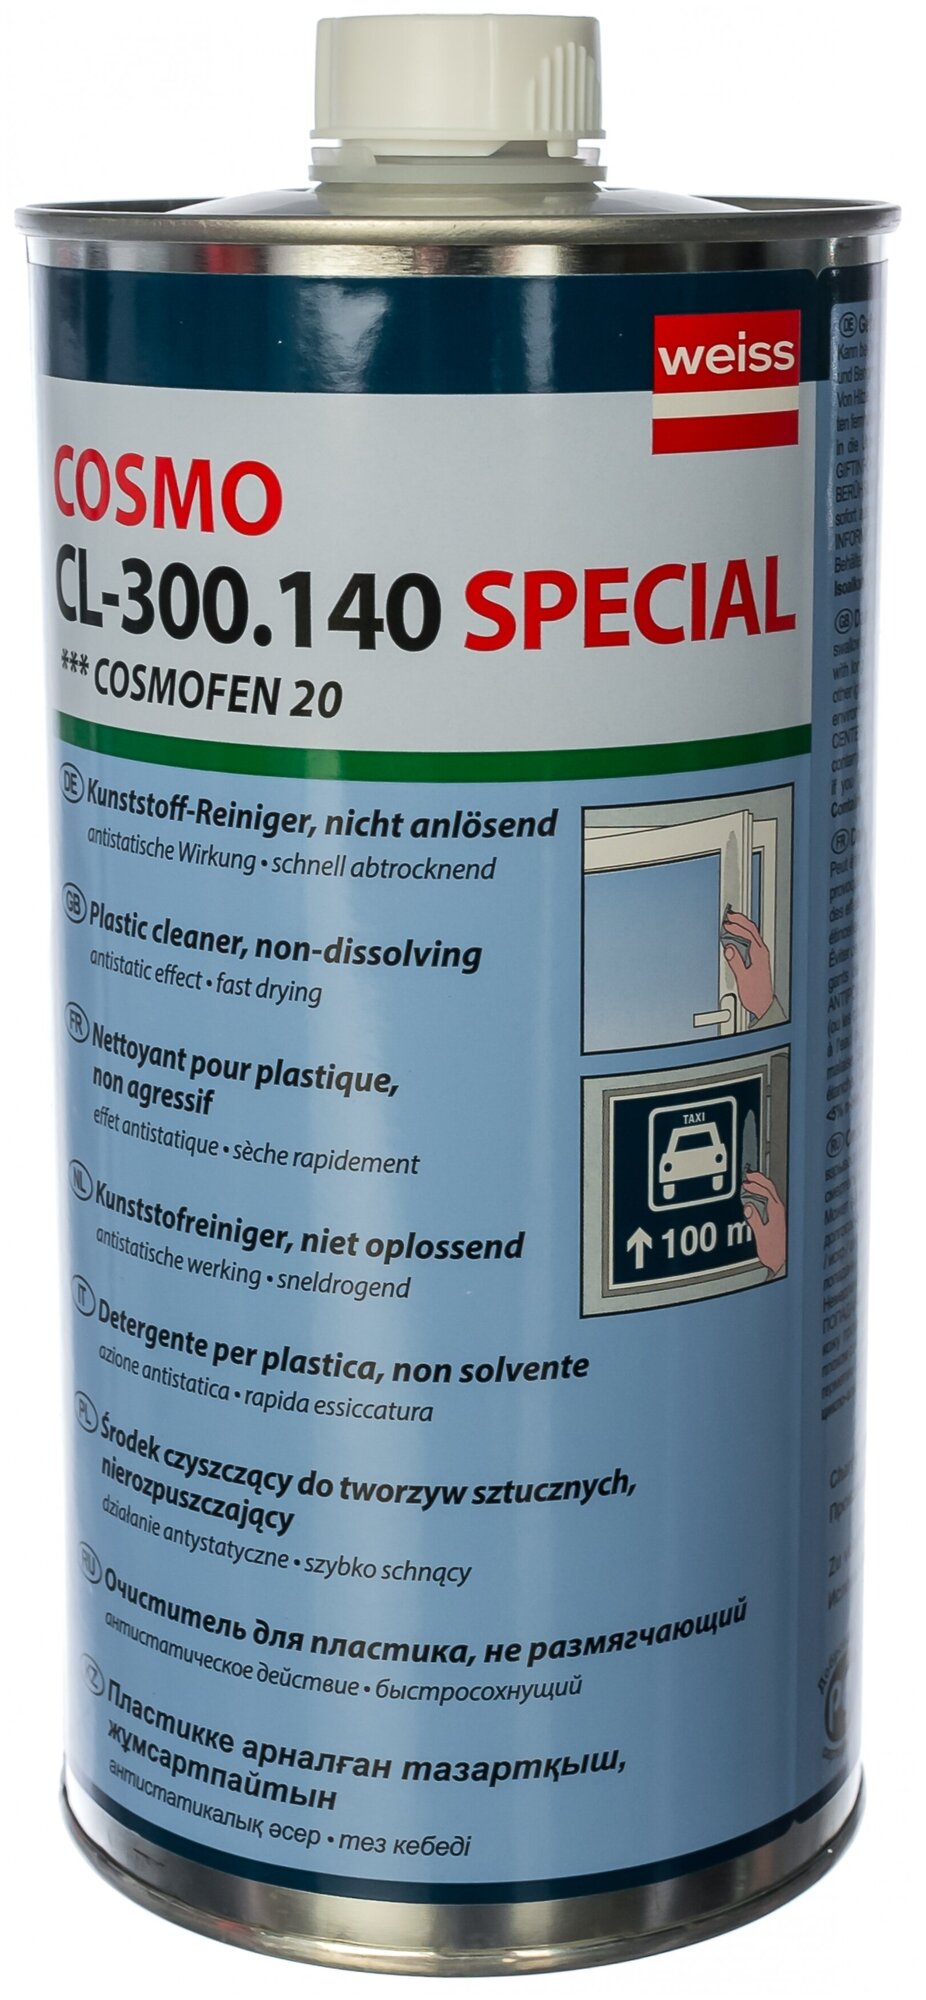 Очиститель для ПВХ COSMOFEN 20 1 л CL-300.140